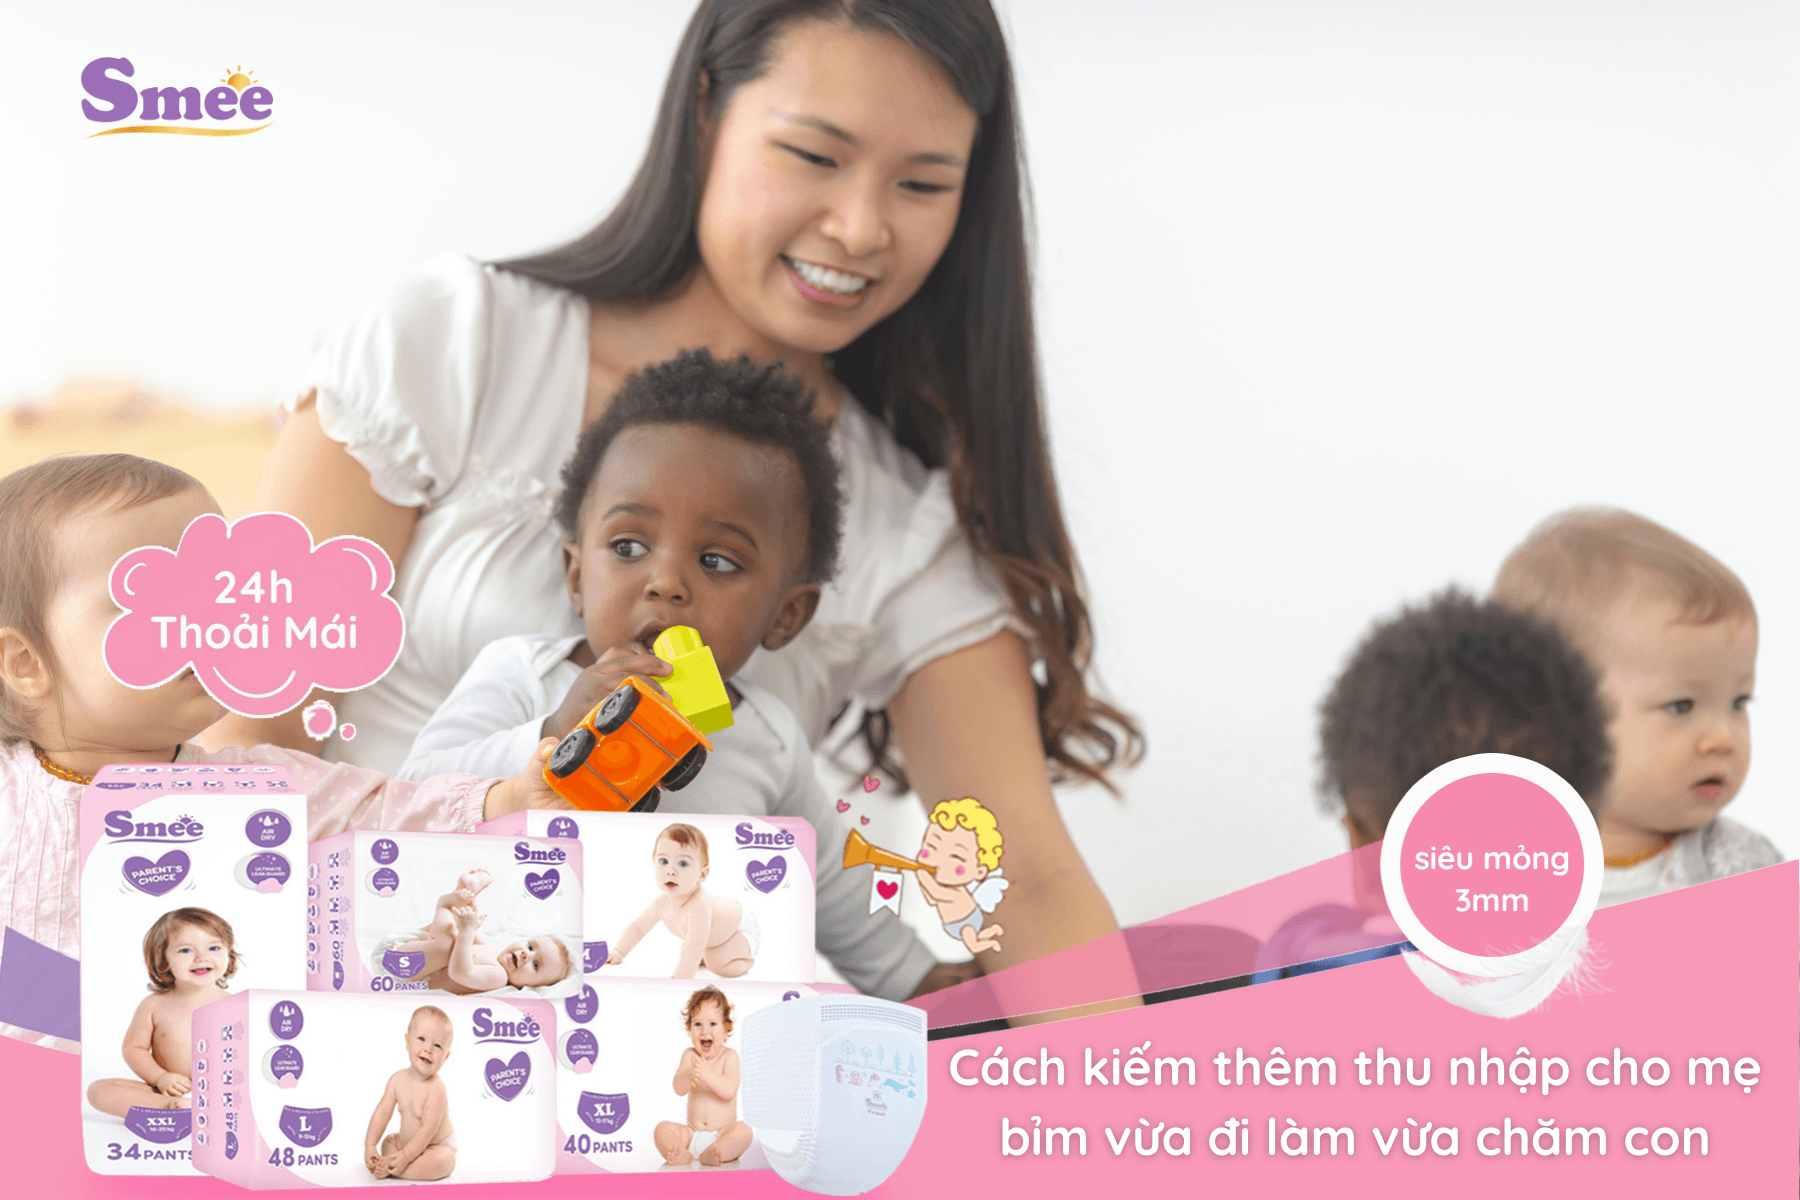 Nhận trông trẻ tại nhà cũng giúp các mẹ bỉm có nguồn thu nhập tốt